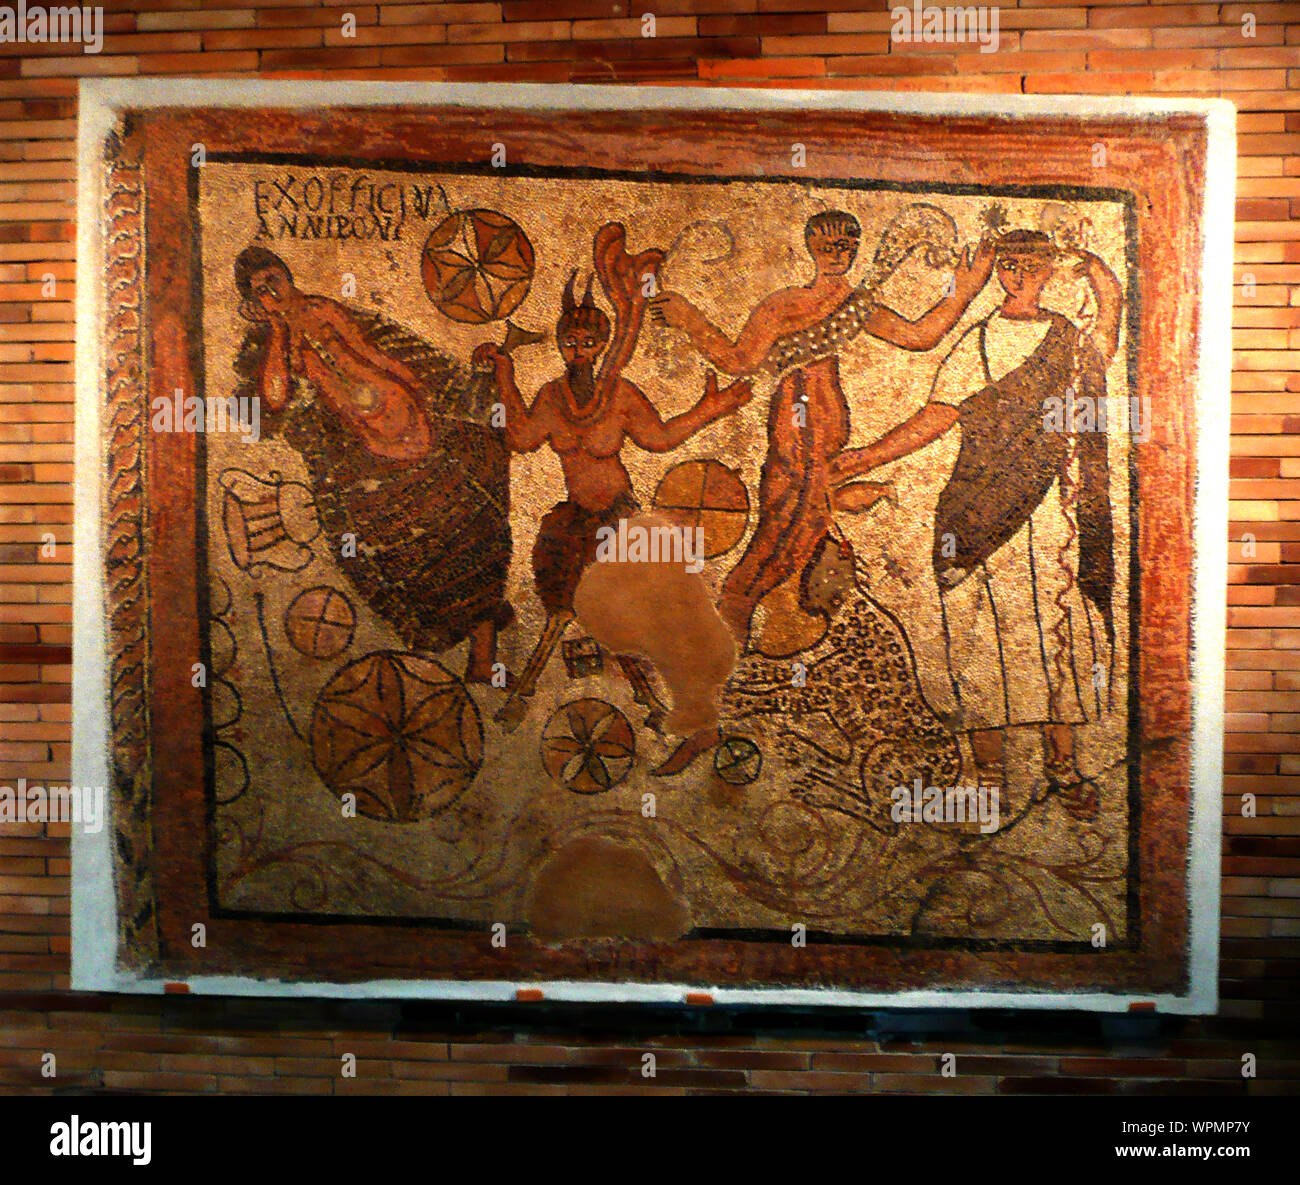 Musée national d'Art Romain, Mérida, Espagne (2009) photographie - une mosaïque d'Ariadne, Pan,(Bachus), le Haut Tyrus (Hiram ?) et une panthère (île de Naxos) Banque D'Images